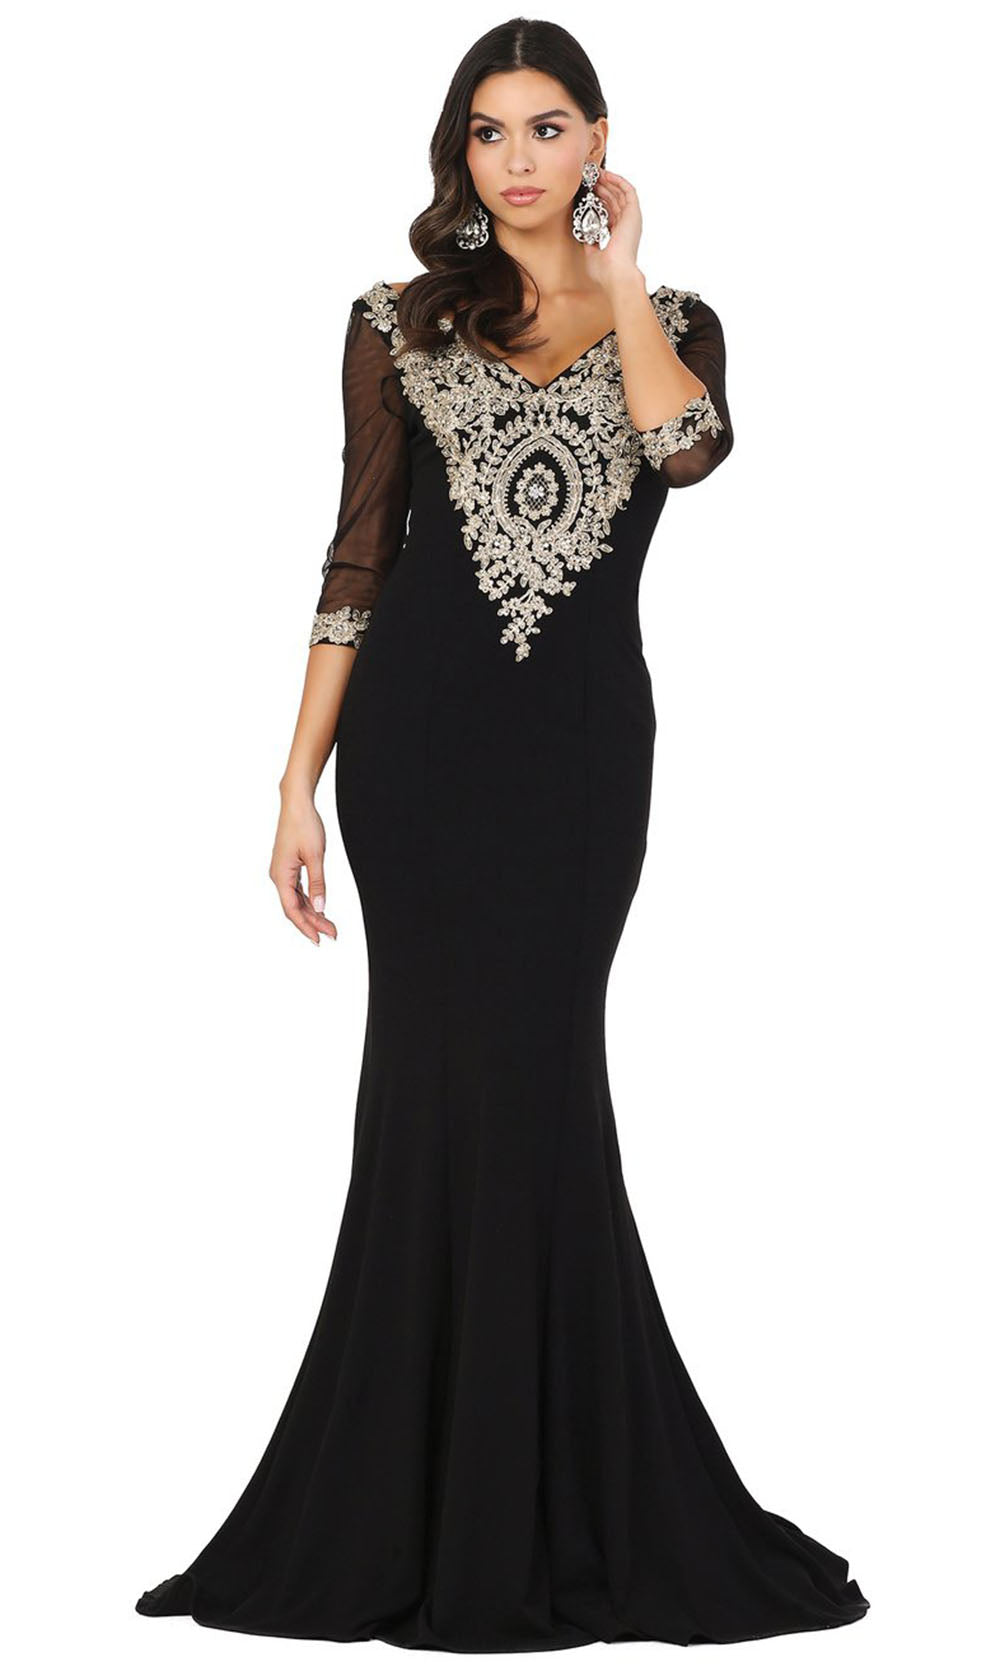 Dancing Queen - 2911 Metallic Lace Applique Quarter Sleeve Gown In Black